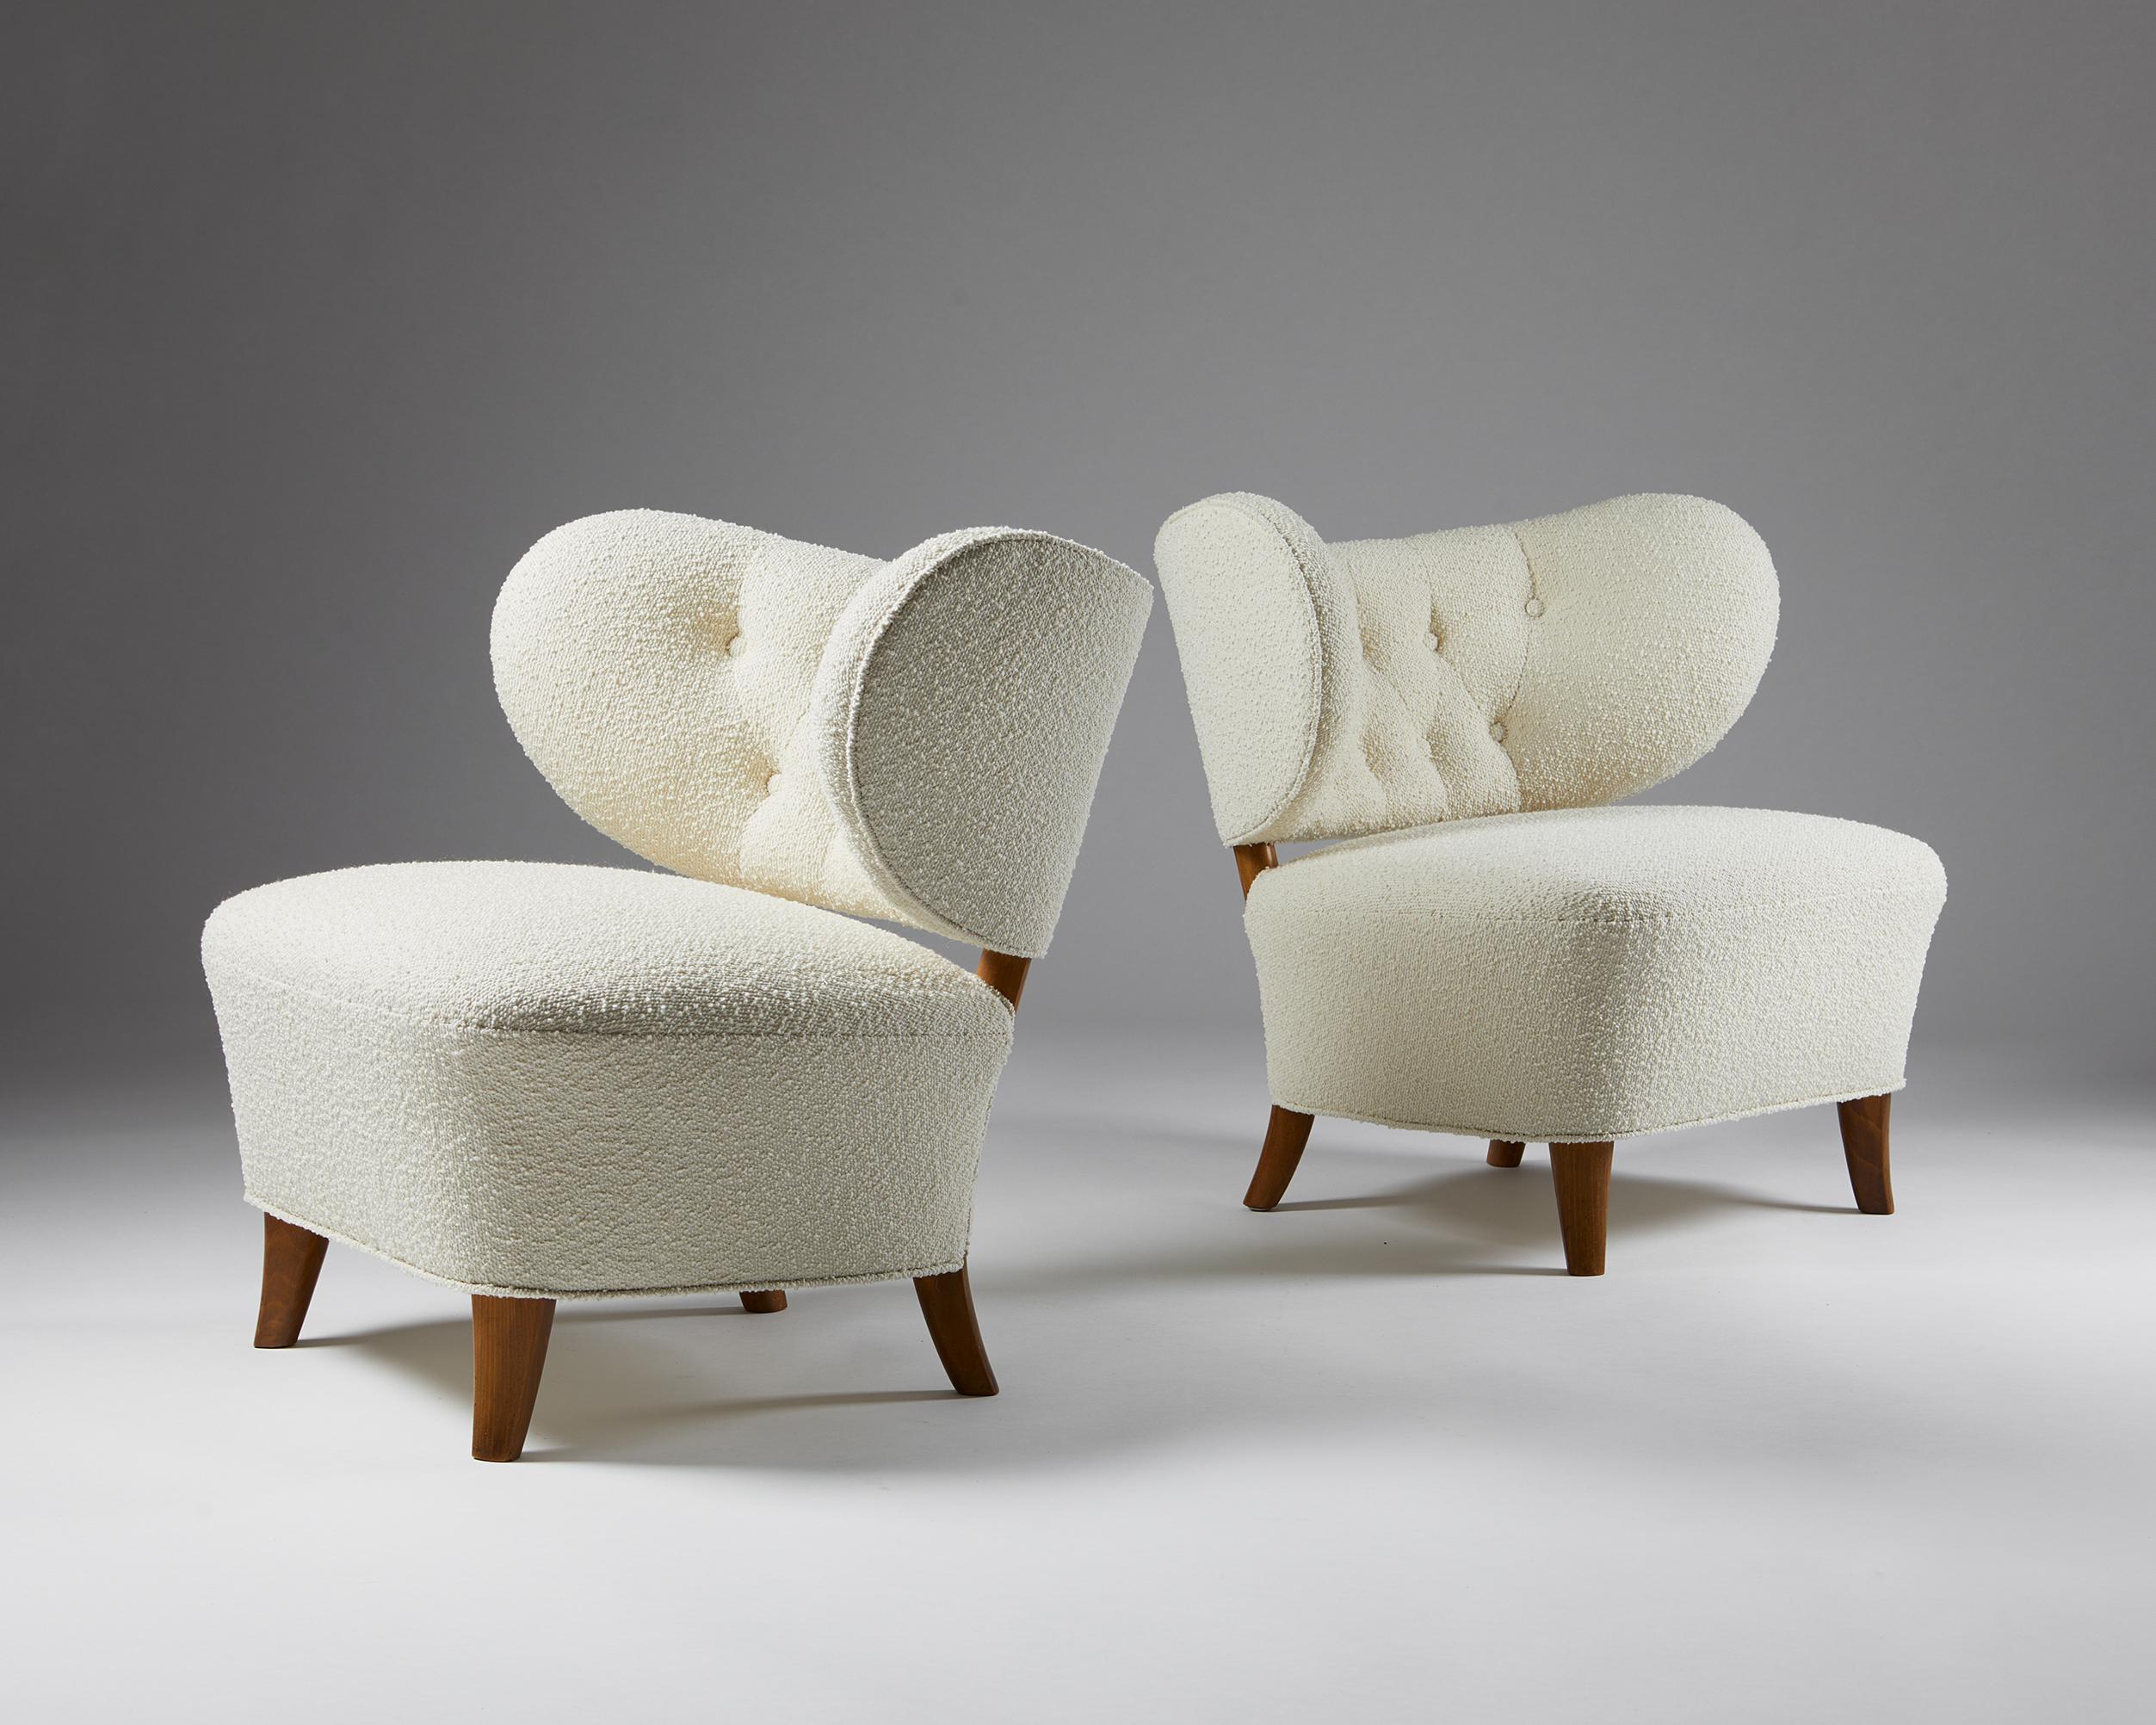 Paire de fauteuils conçus par Otto Schulz pour Boet,
Suède, années 1940.

Revêtement en laine et bois laqué.


Ce modèle Schulz est l'une des chaises les plus rares et les plus belles du designer. Les deux chaises ont été récemment retapissées dans